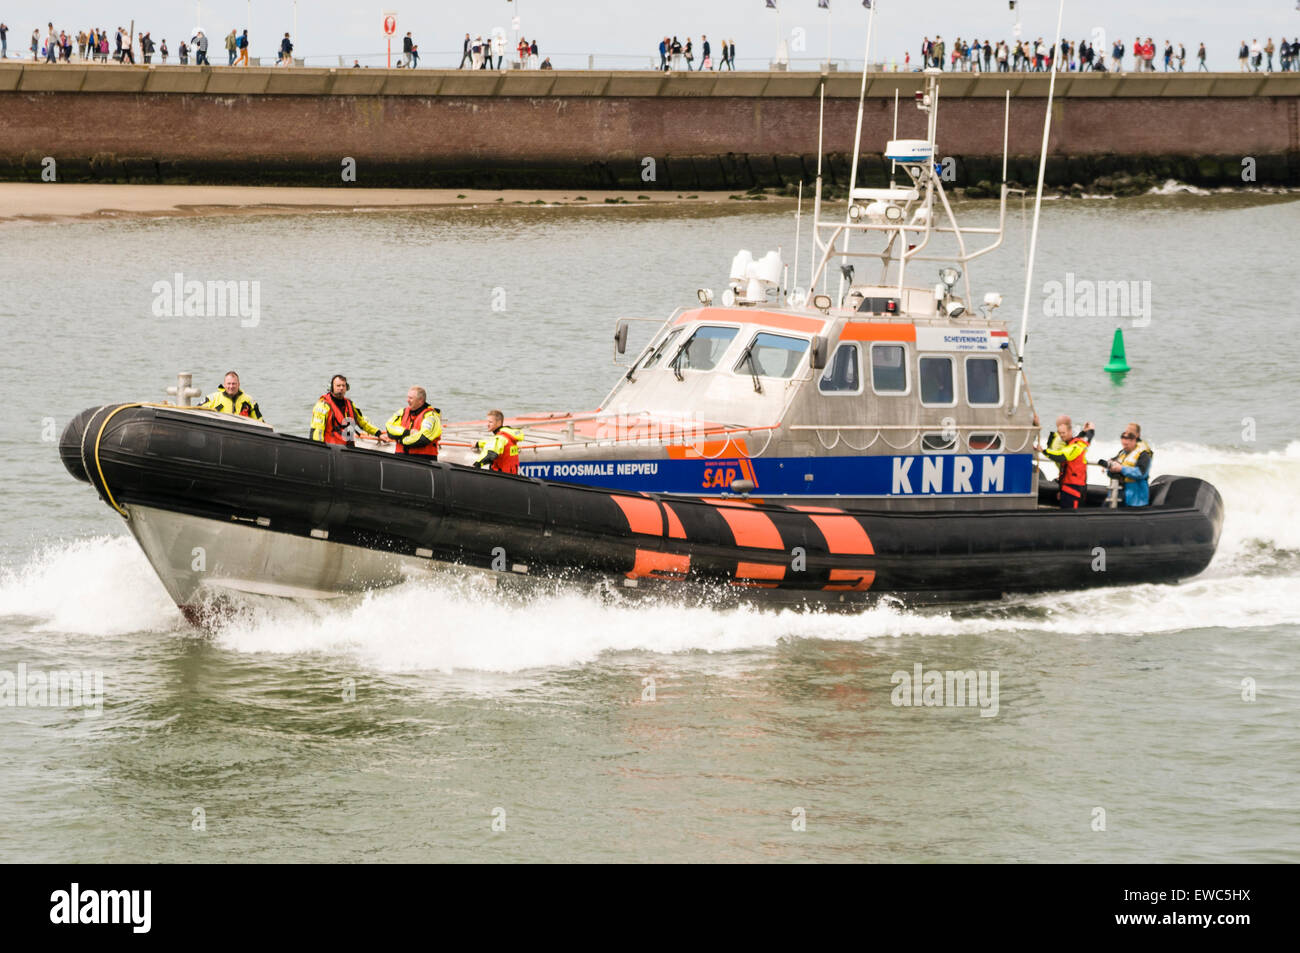 Die Kitty Roomale Nepveu, einer der die Rettungsboote der KNRM (holländische Rettungsboot Rettungsdienst). Stockfoto